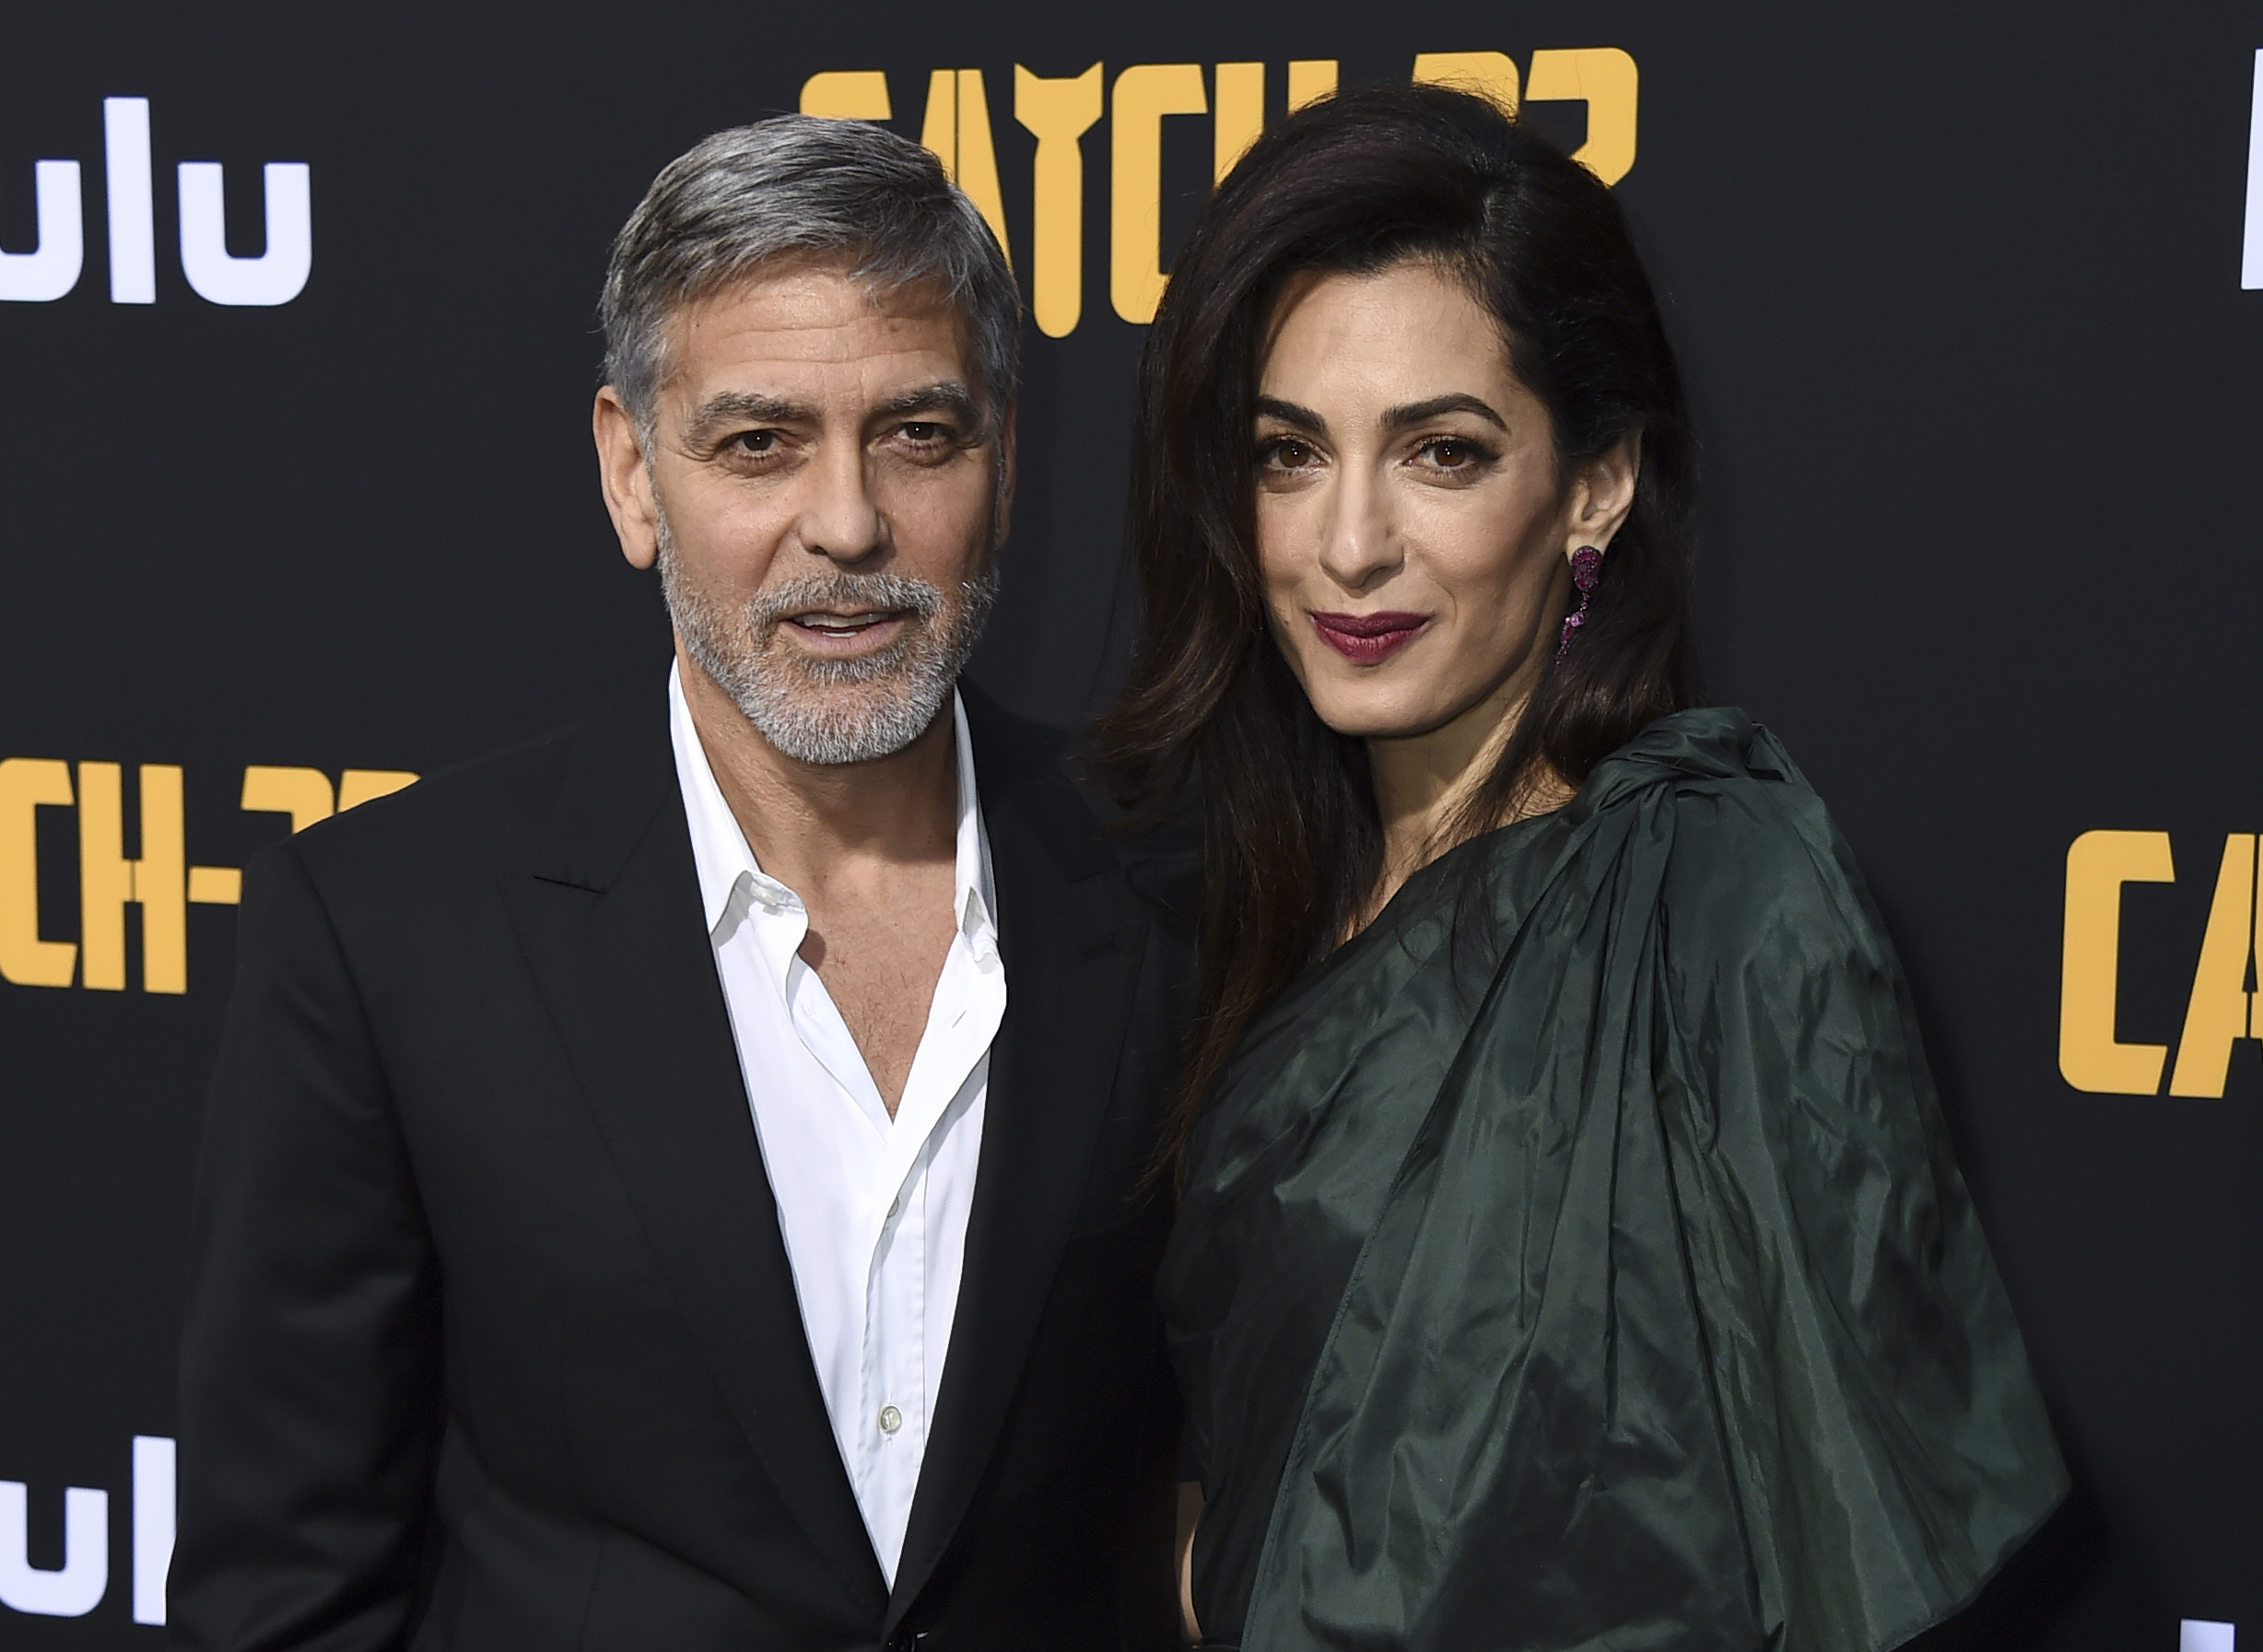 George Clooney hopes media 'kinder' to Meghan Markle